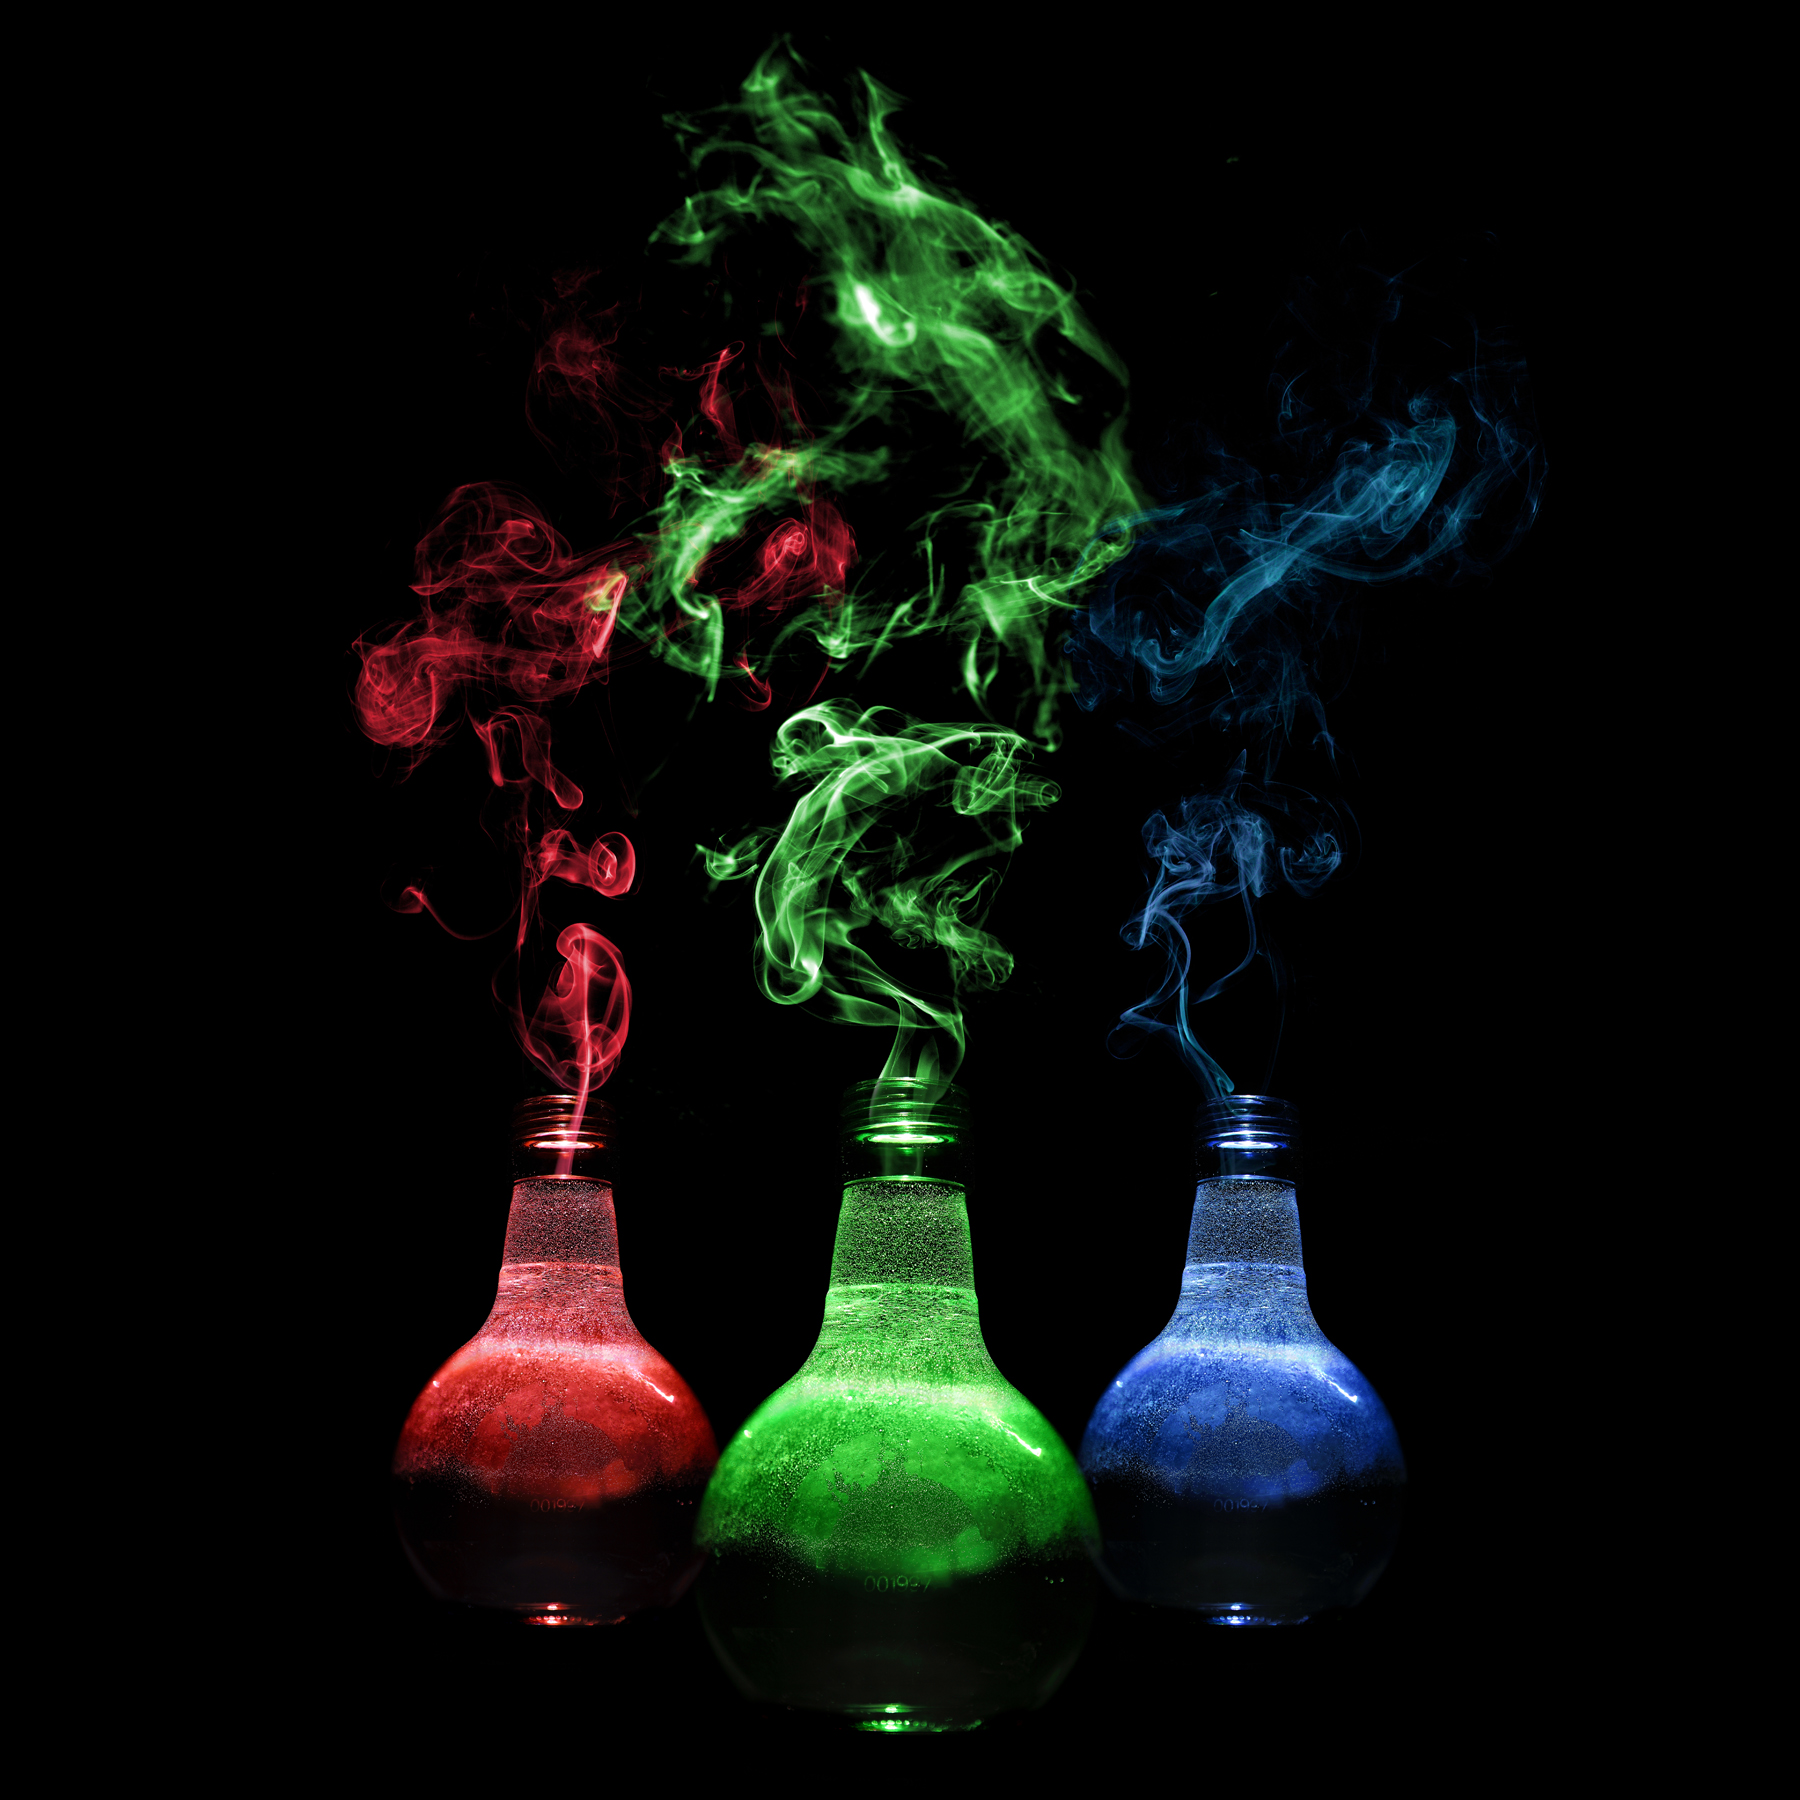 5.-Smoking-potion-bottles.jpg